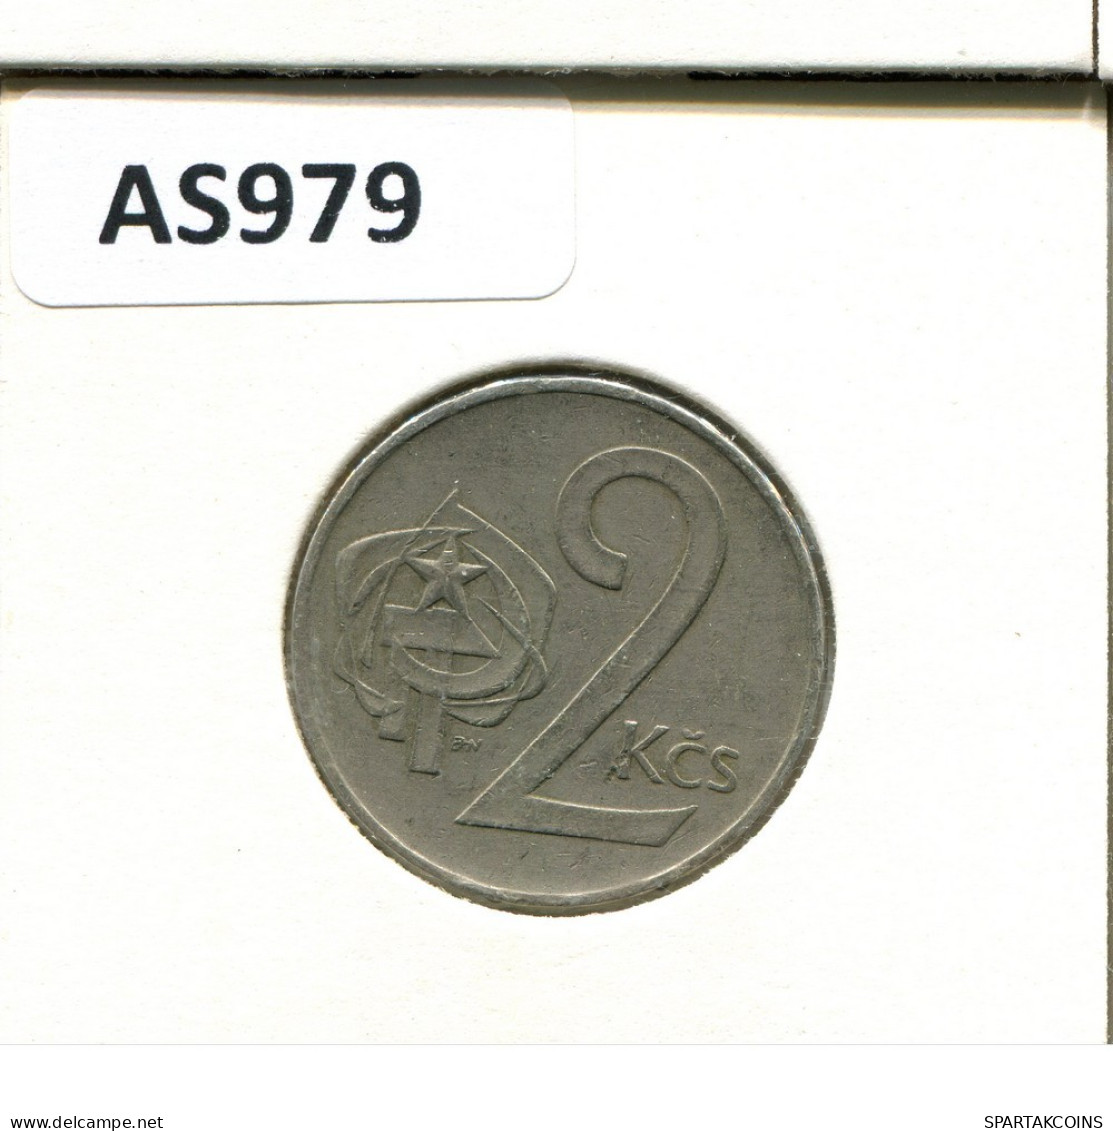 2 KORUN 1983 TSCHECHOSLOWAKEI CZECHOSLOWAKEI SLOVAKIA Münze #AS979.D.A - Tschechoslowakei